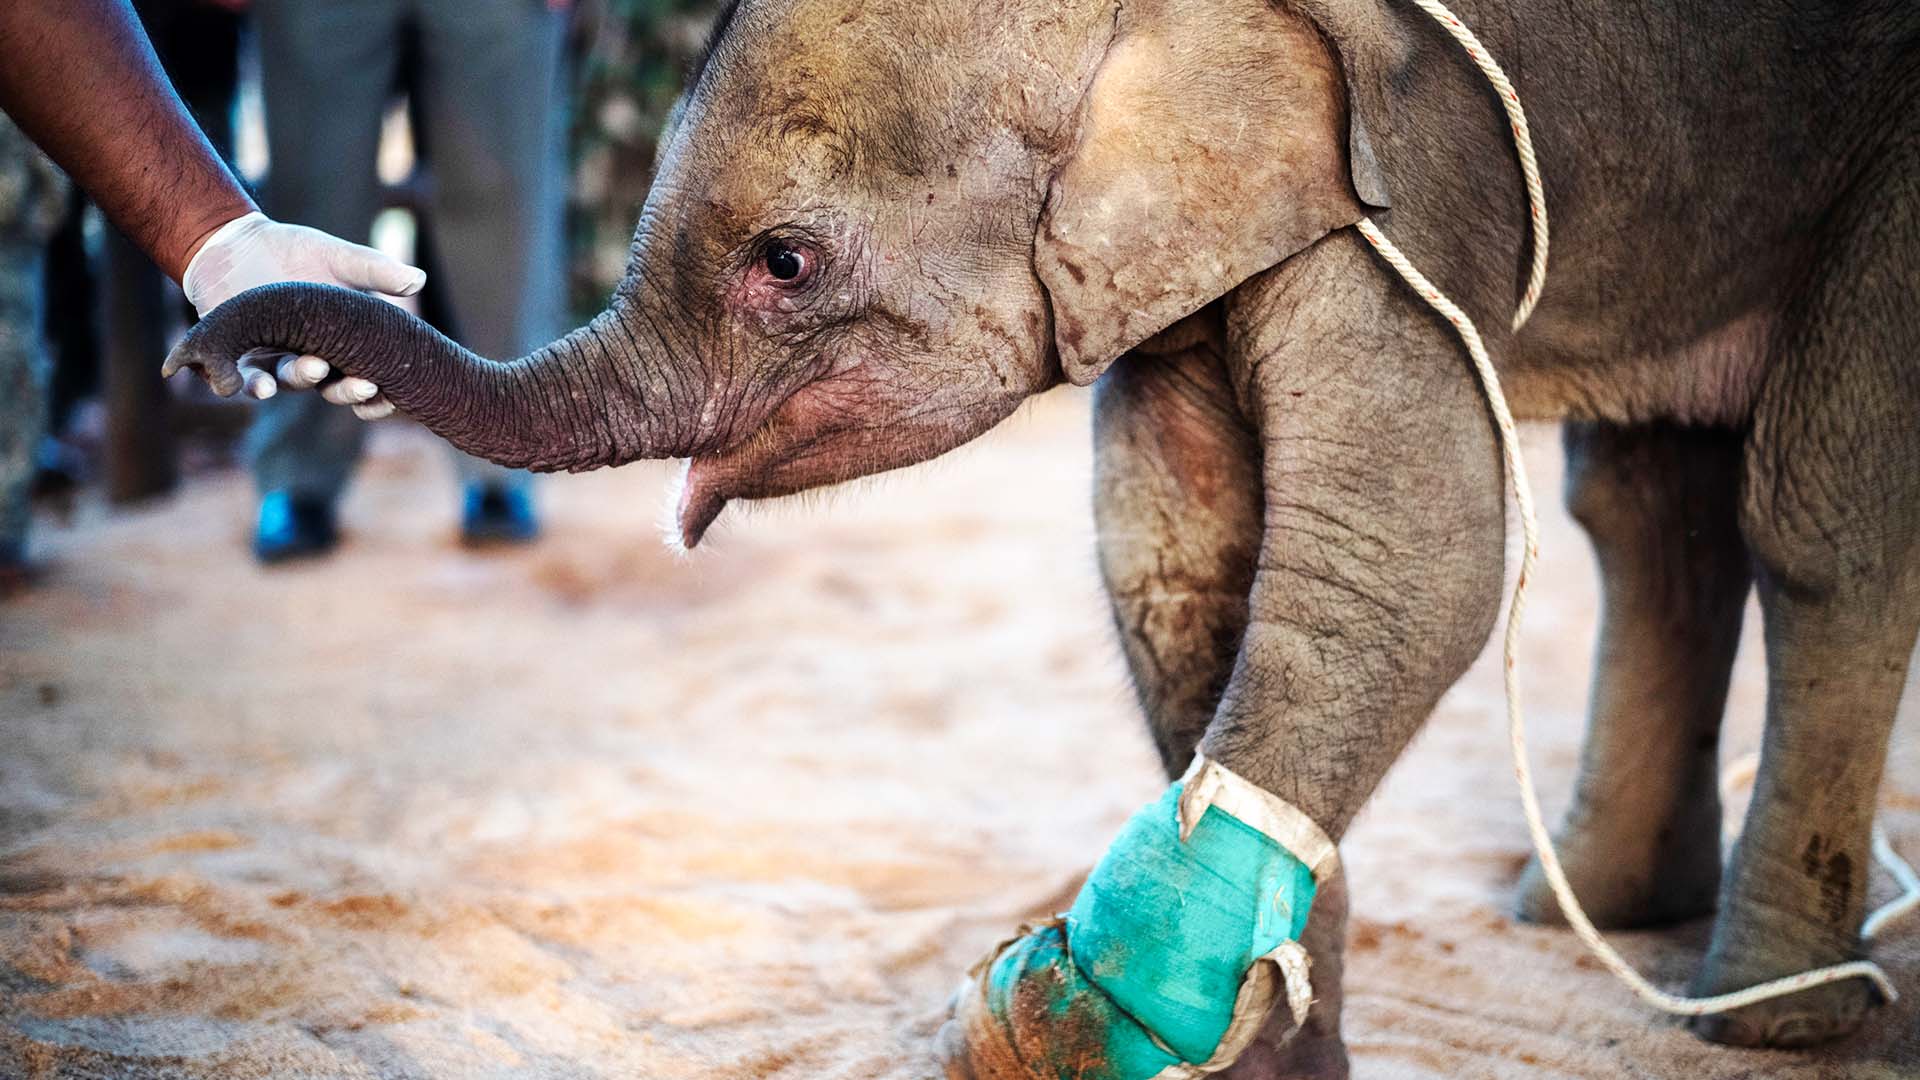 Слонёнка, спасённого из ловушки охотника, лечат в Таиланде